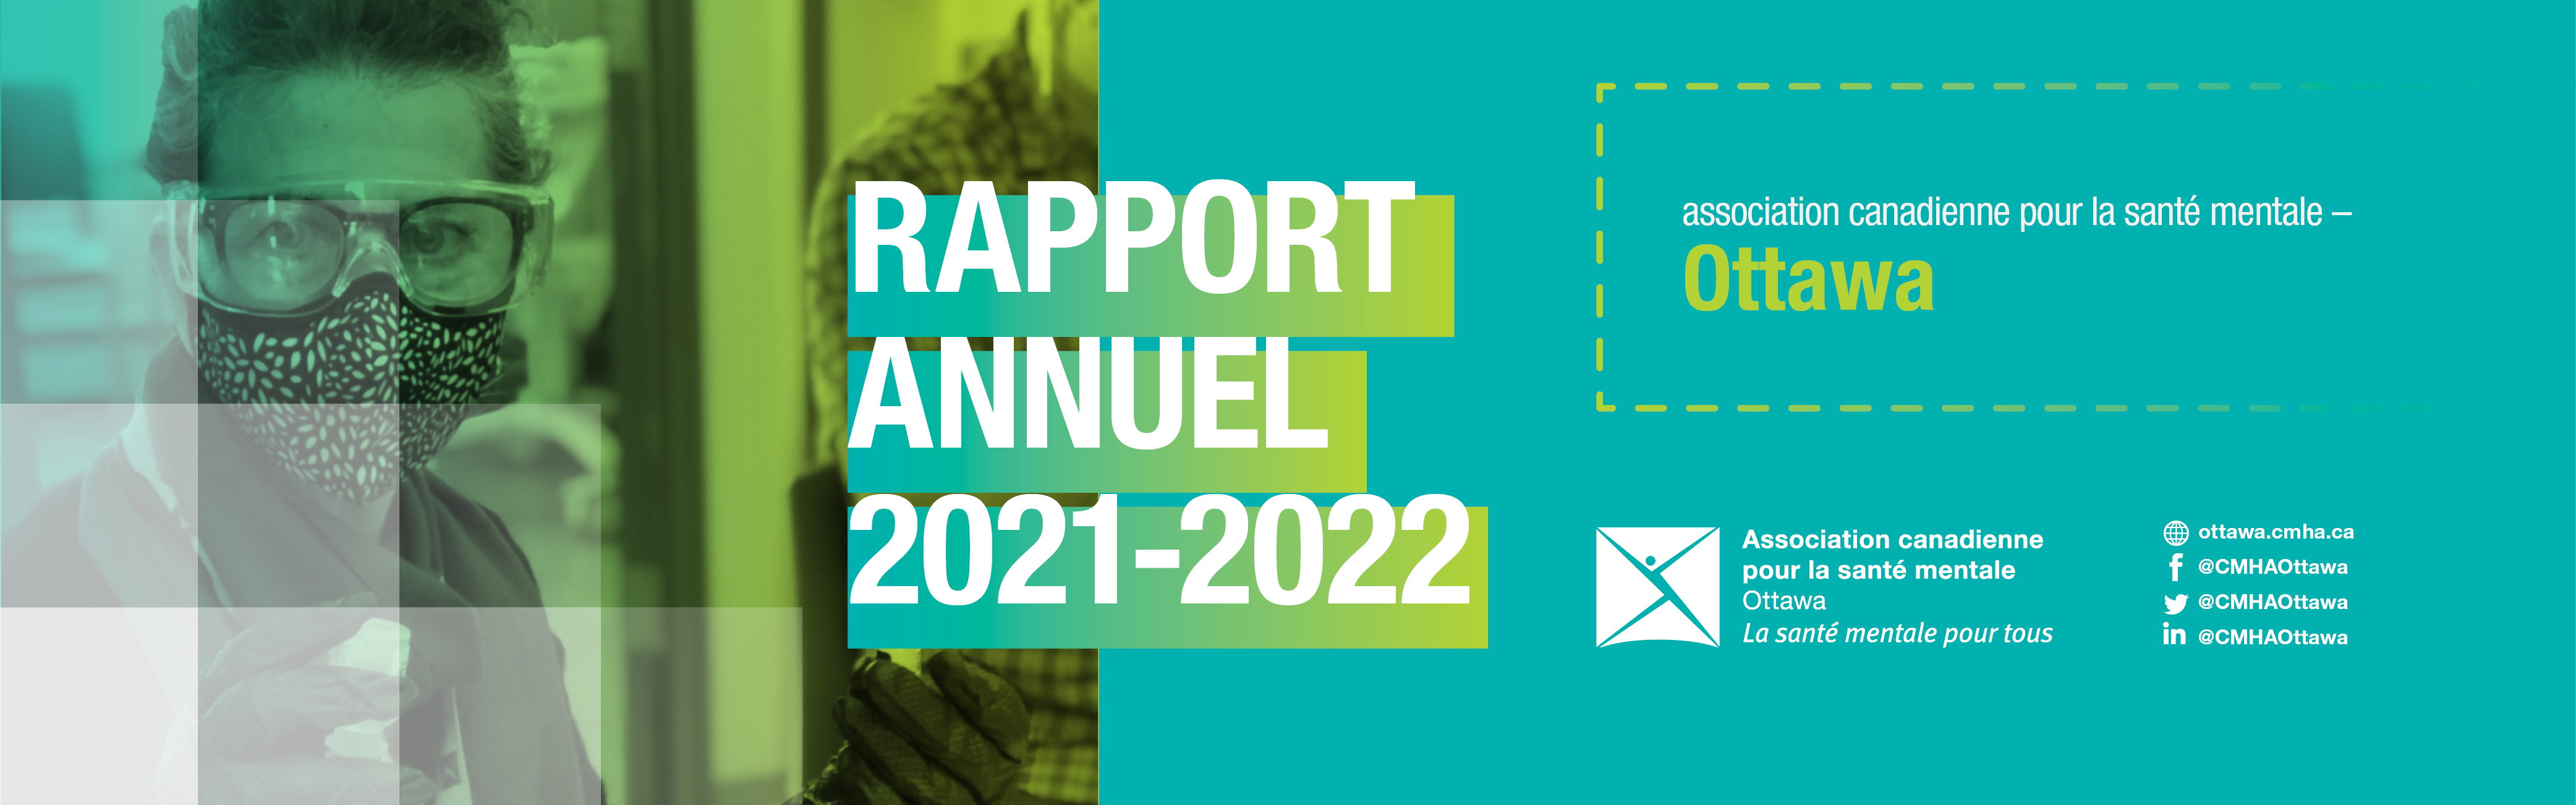 Disponible maintenant : Rapport annuel 2021-2022 de l’ACSM Ottawa